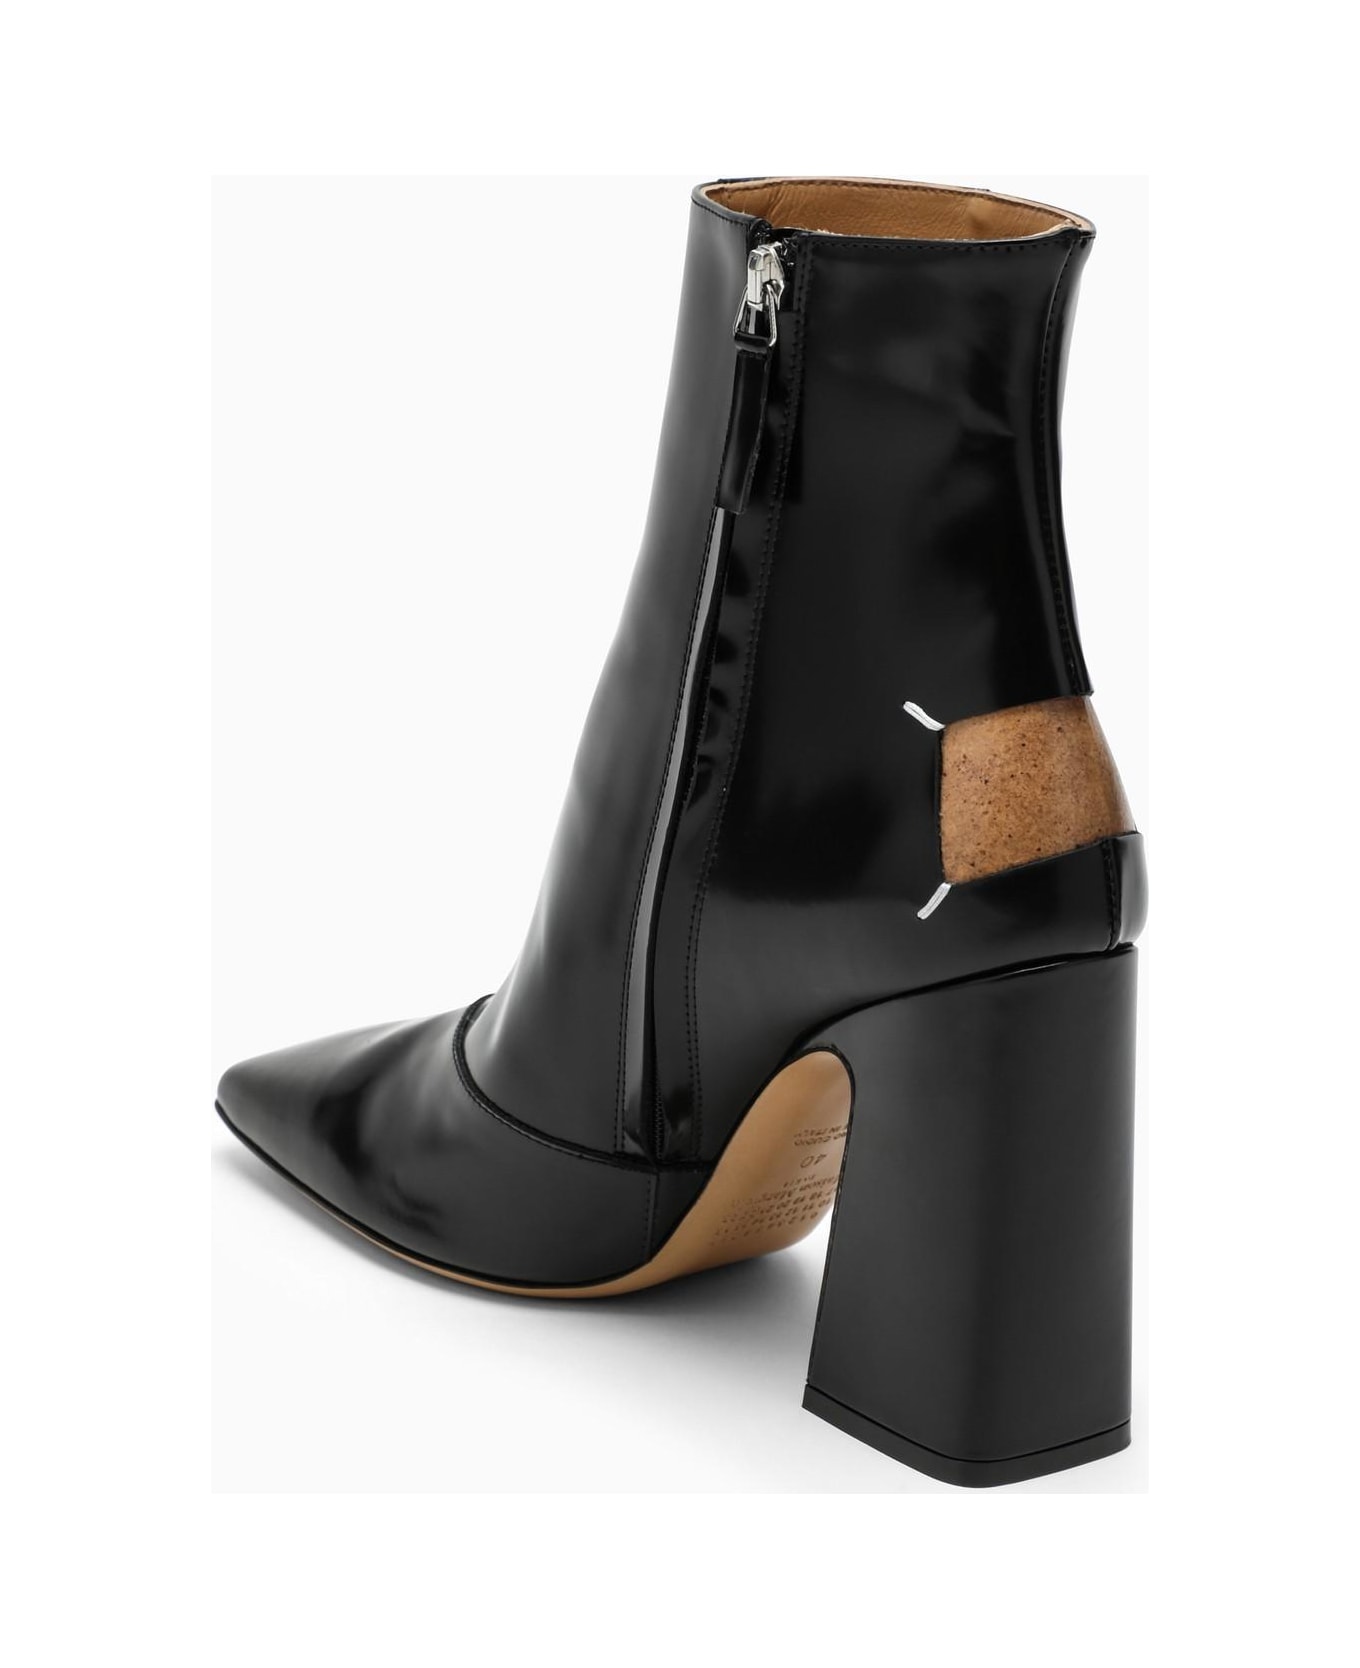 Maison Margiela Black Shiny Leather Ankle Boots